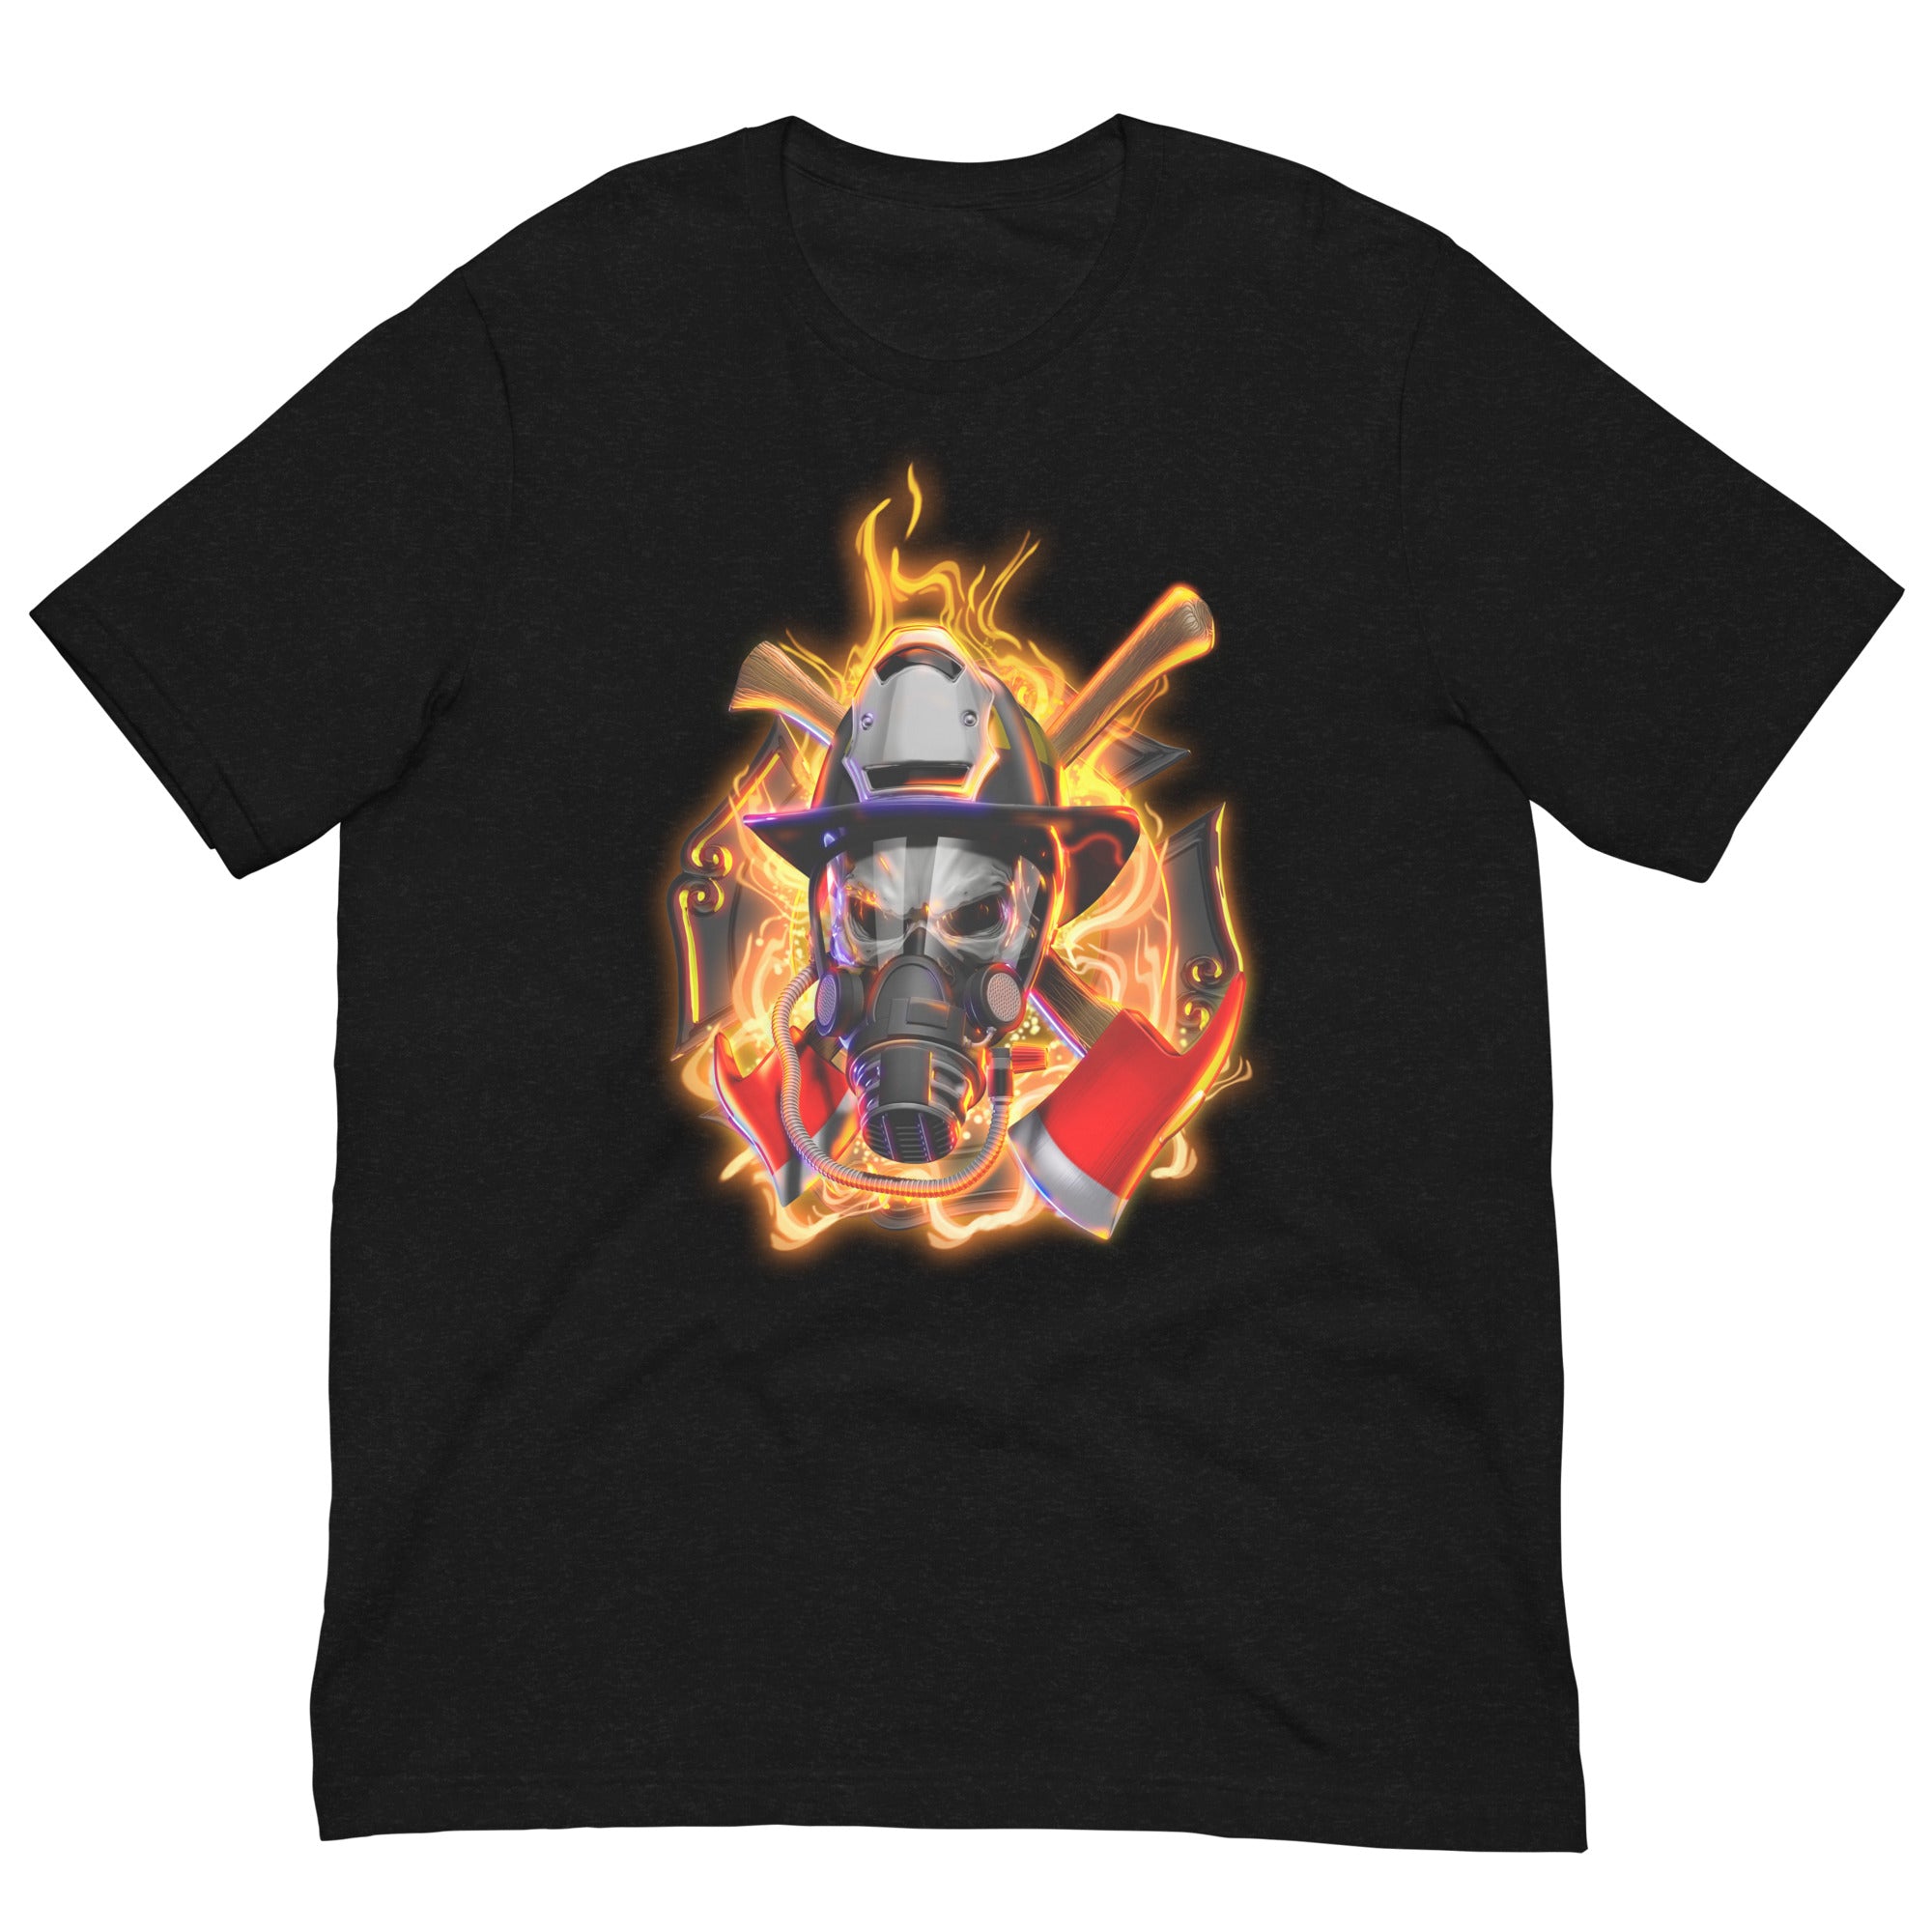 Feuerwehrmann-Schädel Herren-T-Shirt